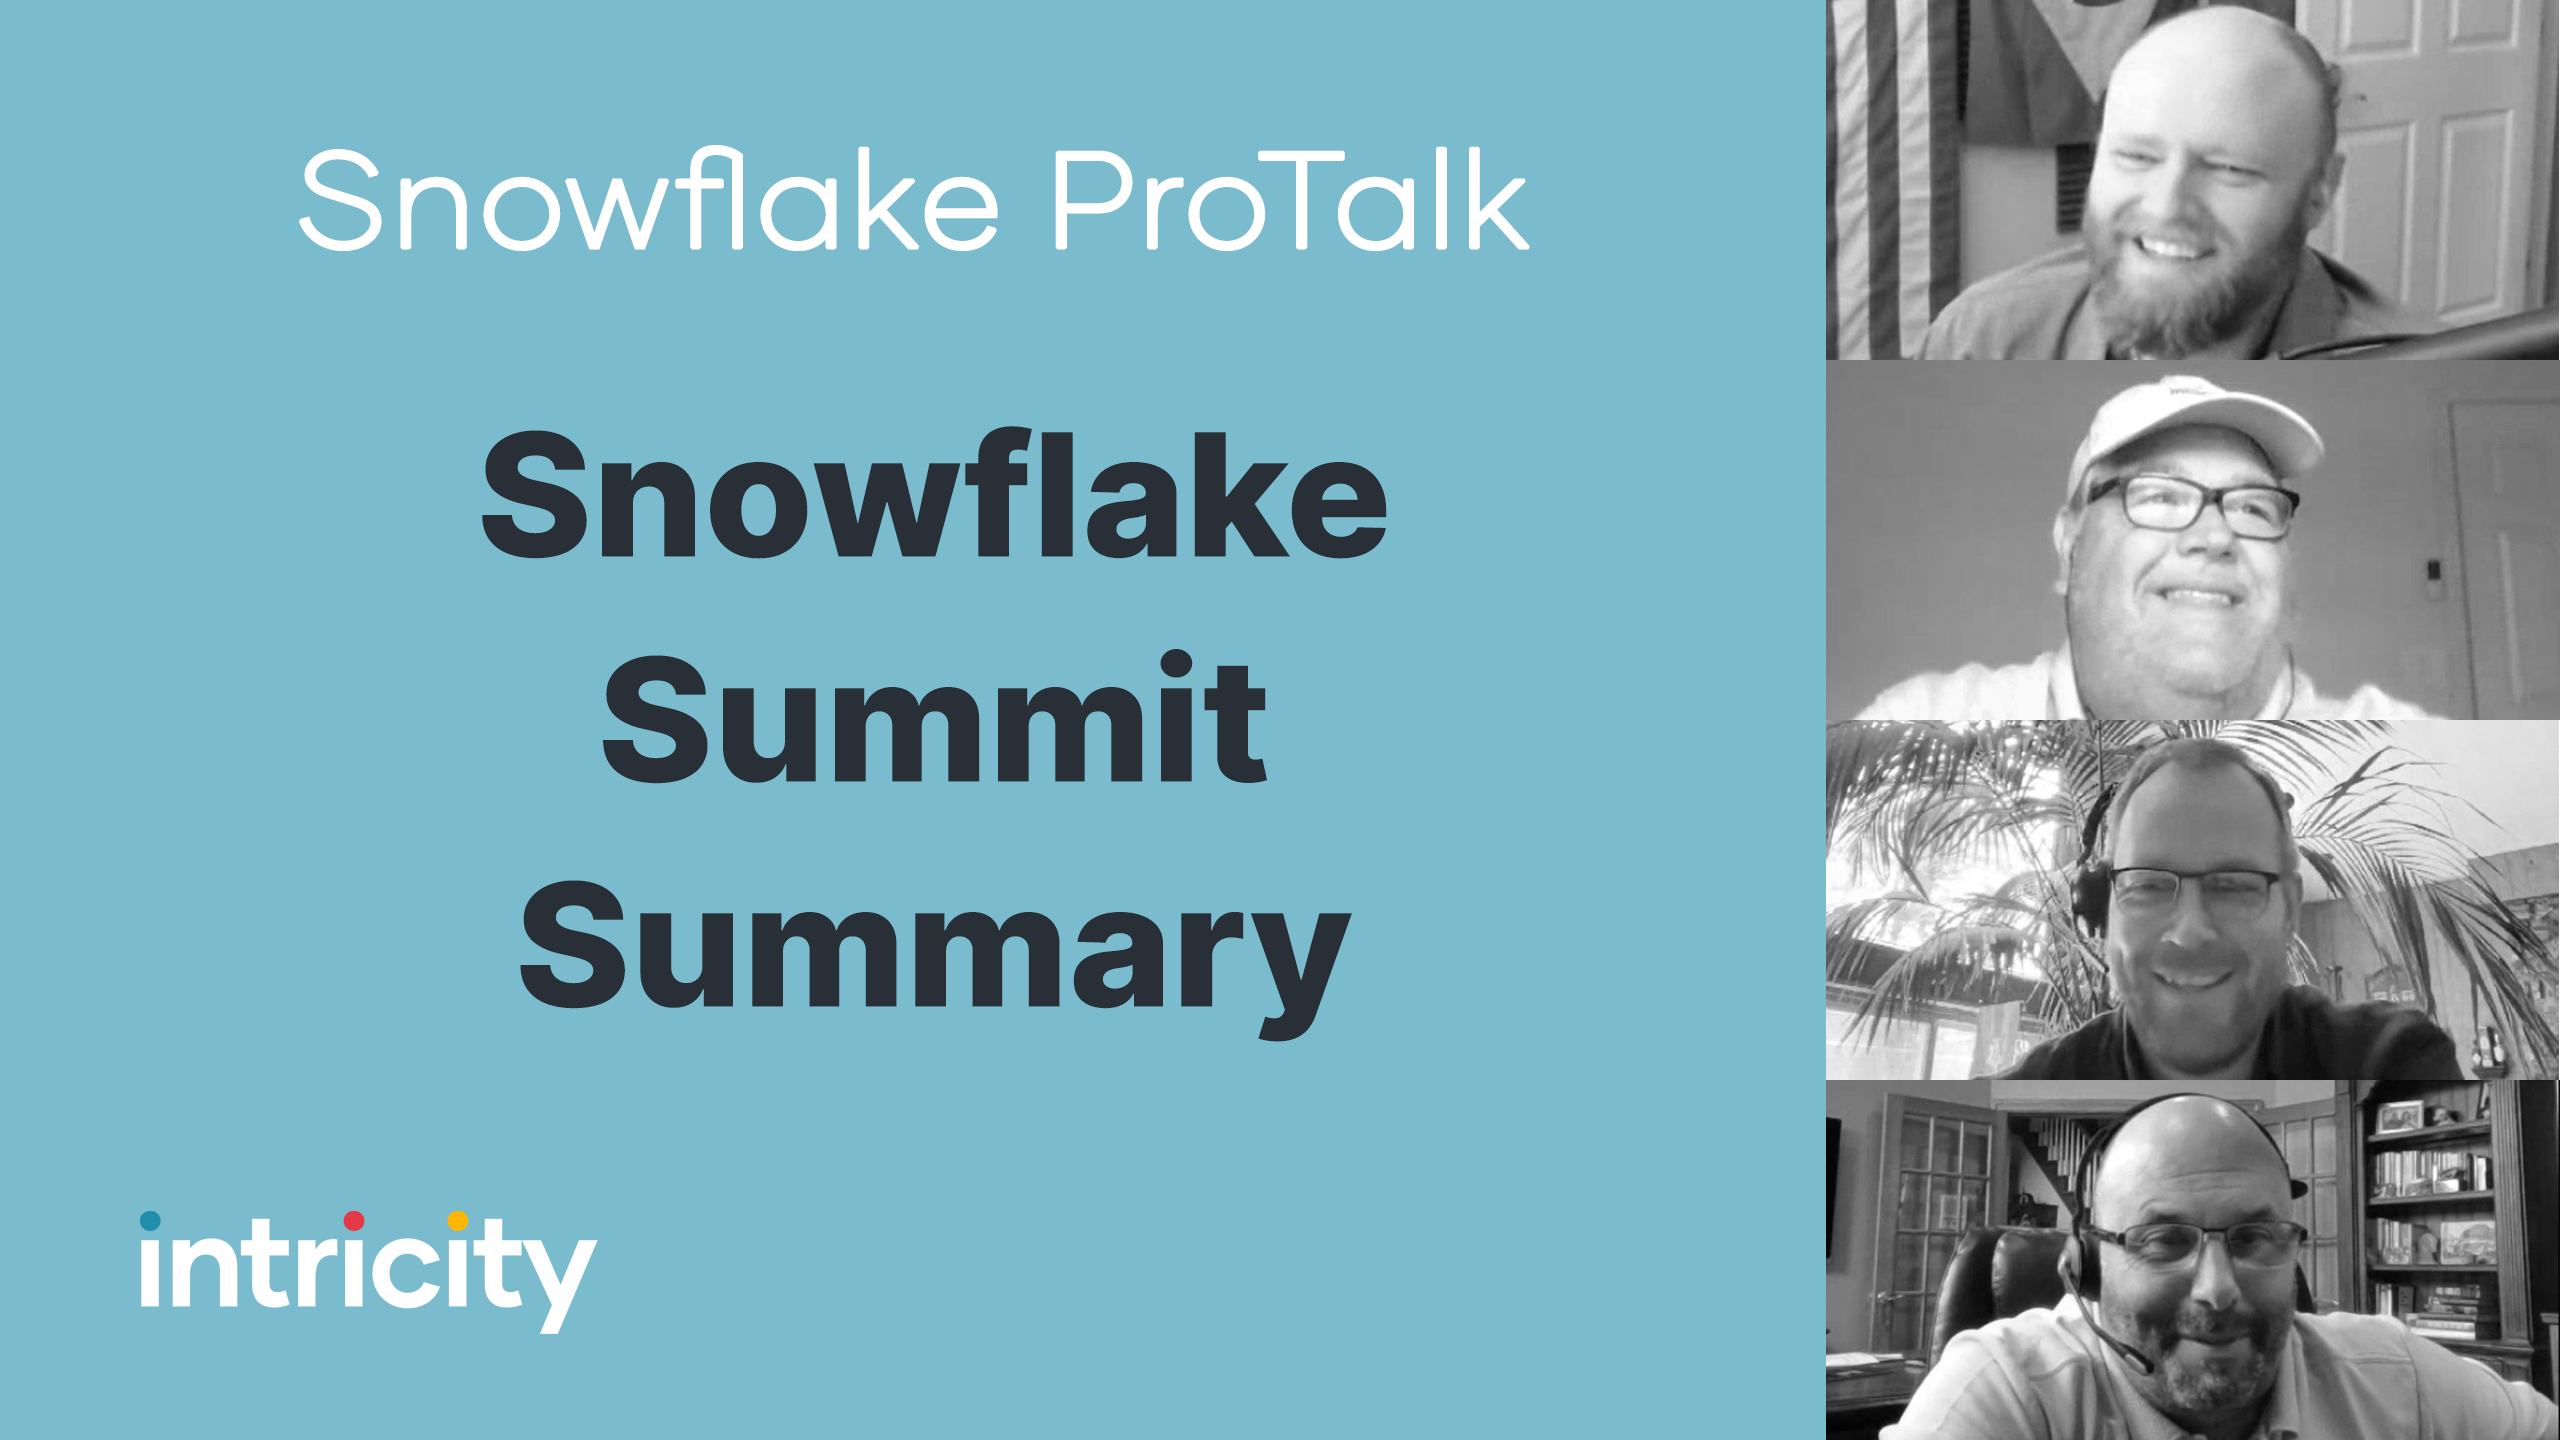 Snowflake ProTalk: Snowflake summit summary